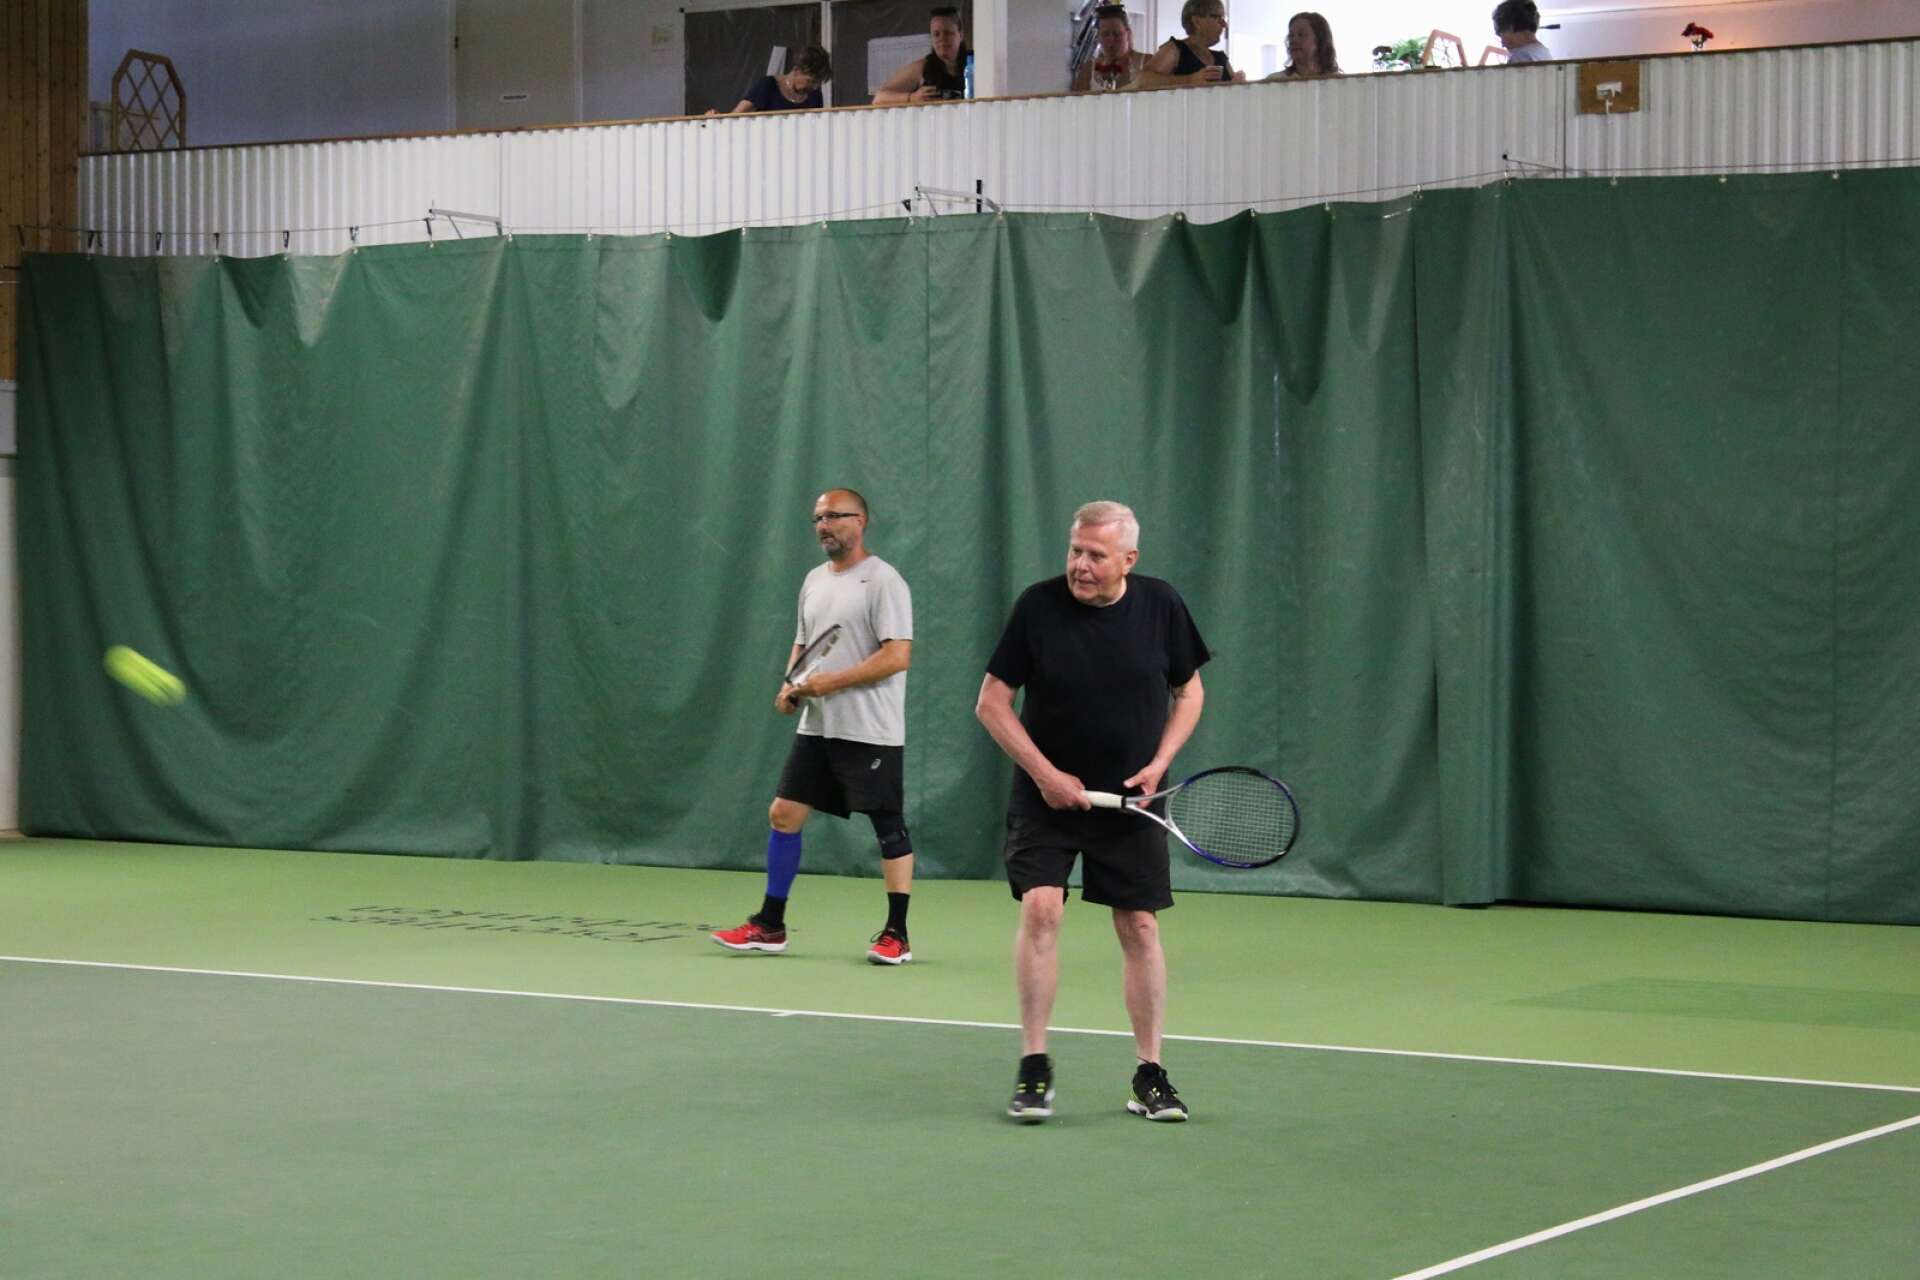 Billerud TK firade hundraårsjubileum med tennisturnering.